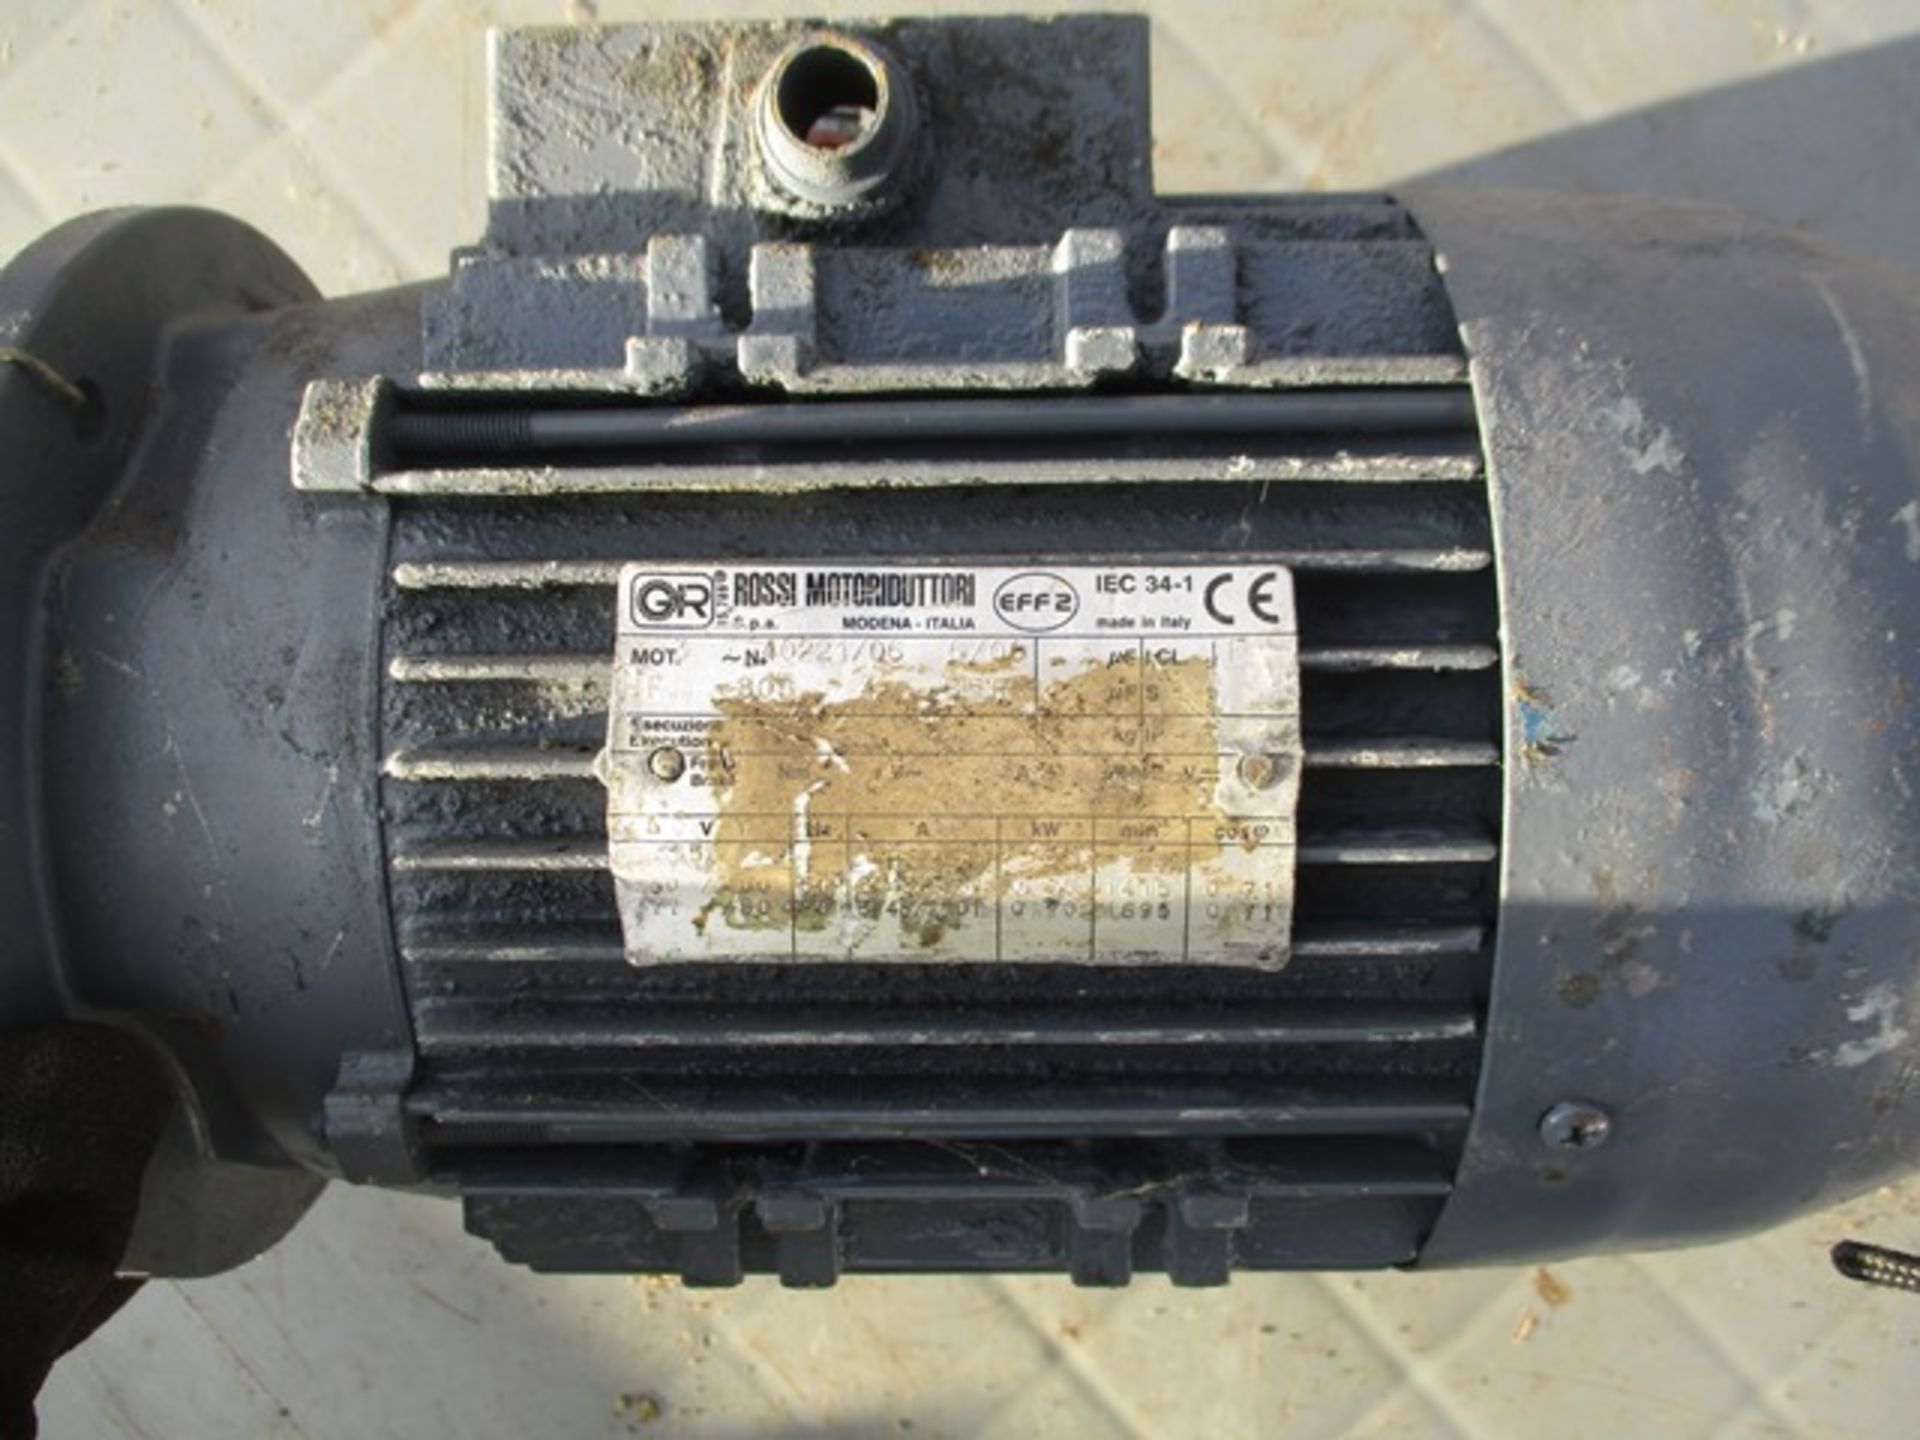 Rossi Motoriduttori IEC 34-1 Motor - Image 2 of 2